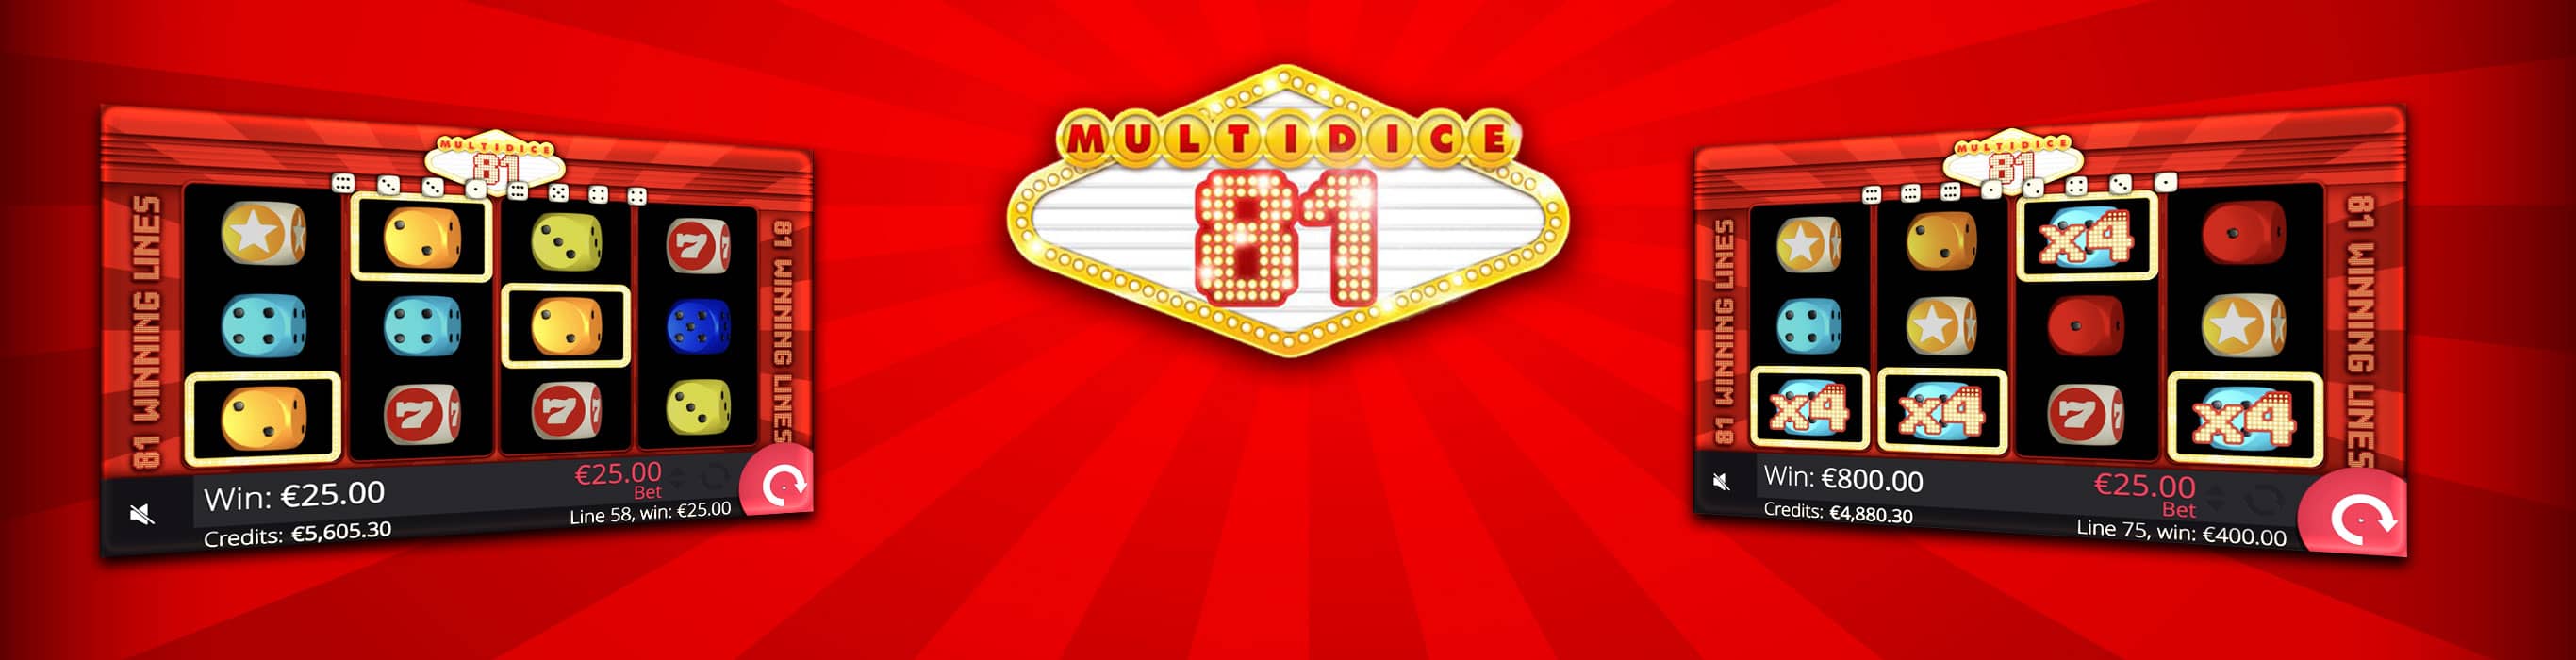 multidice81-banner-2732x700-m